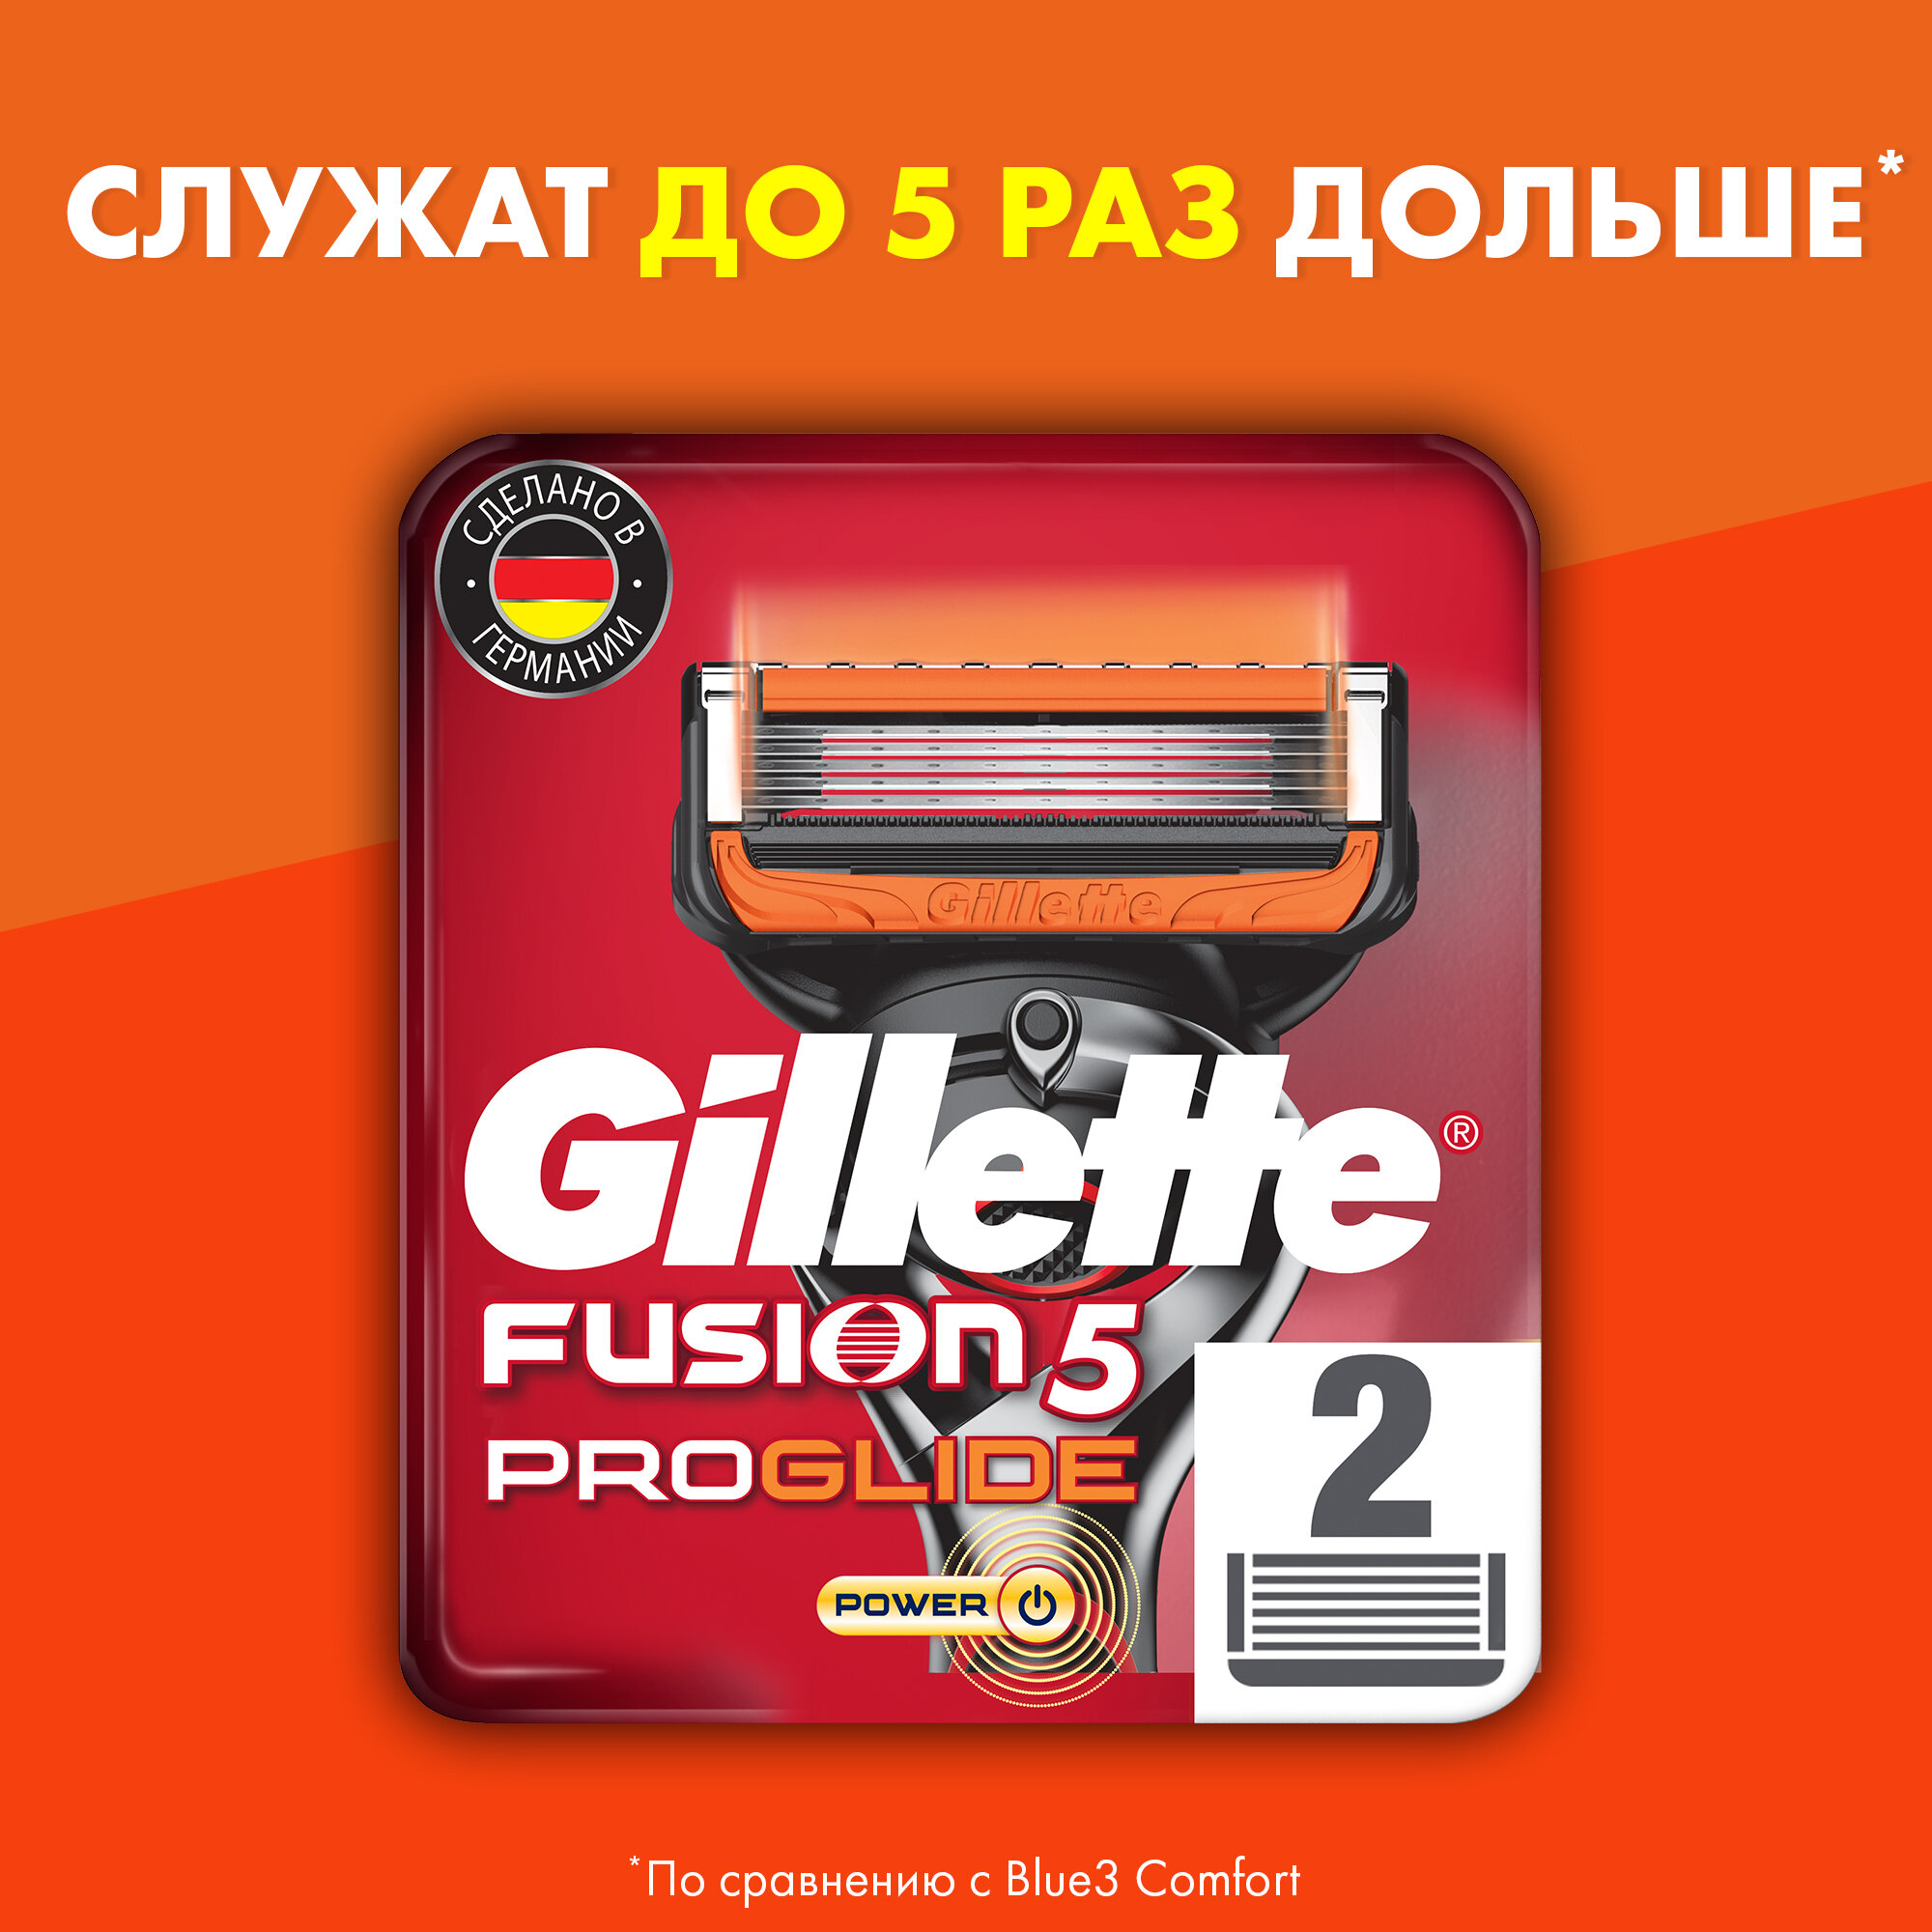 Сменные Кассеты Для Мужской Бритвы Gillette Fusion ProGlide Power, с 5 лезвиями, с точным тримммером для труднодоступных мест, для гладкого бритья надолго, 2 шт